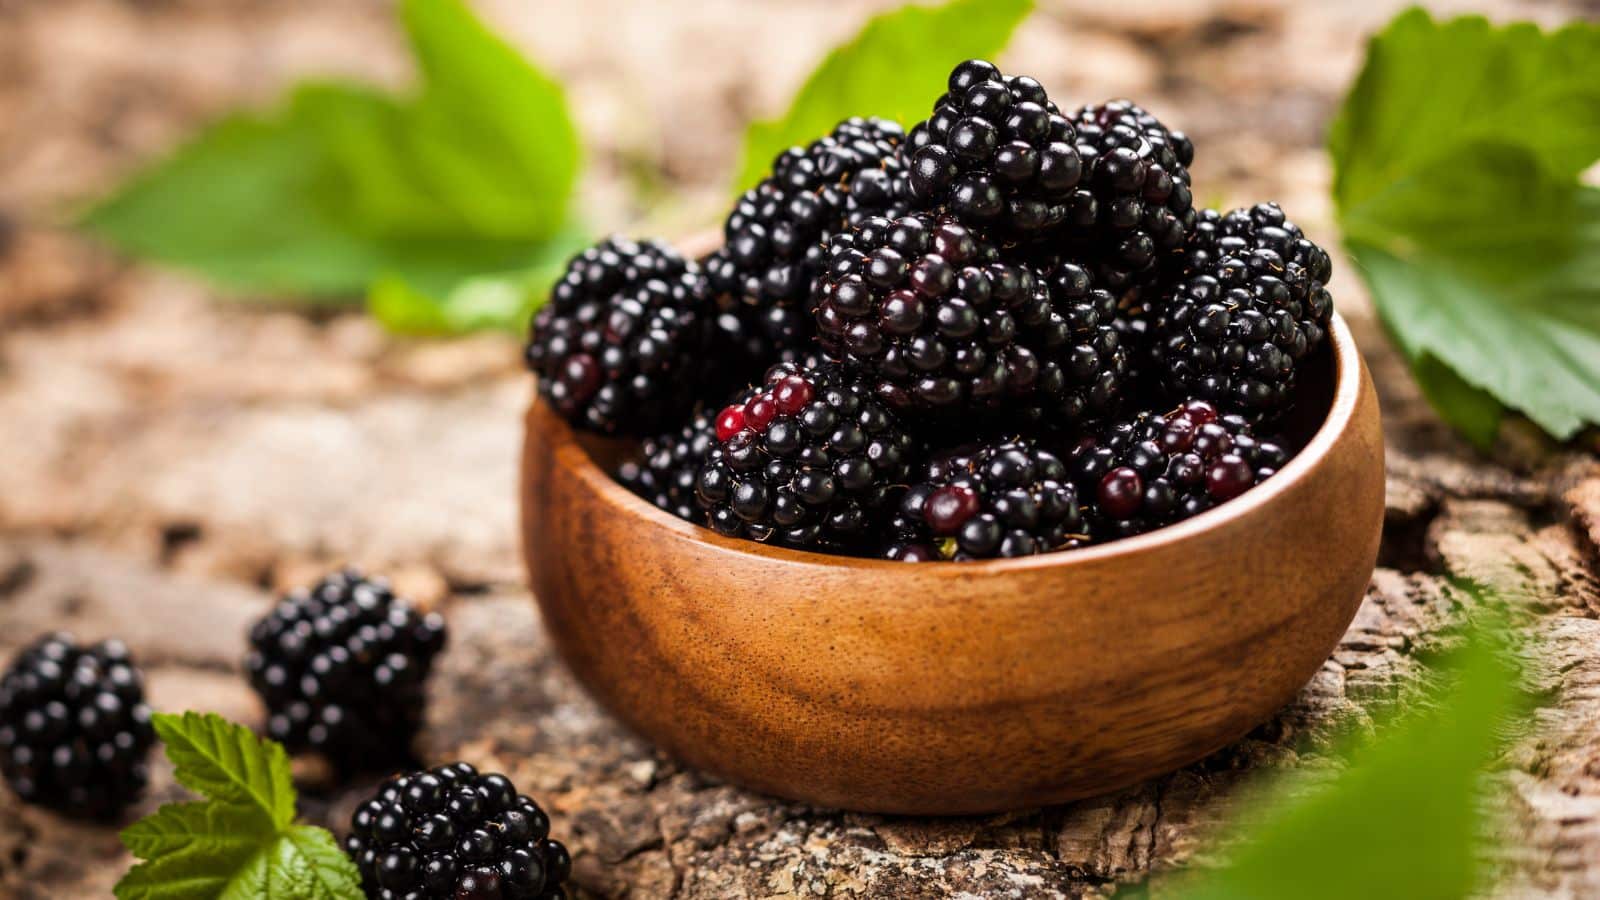 Bowl of blackberries.
